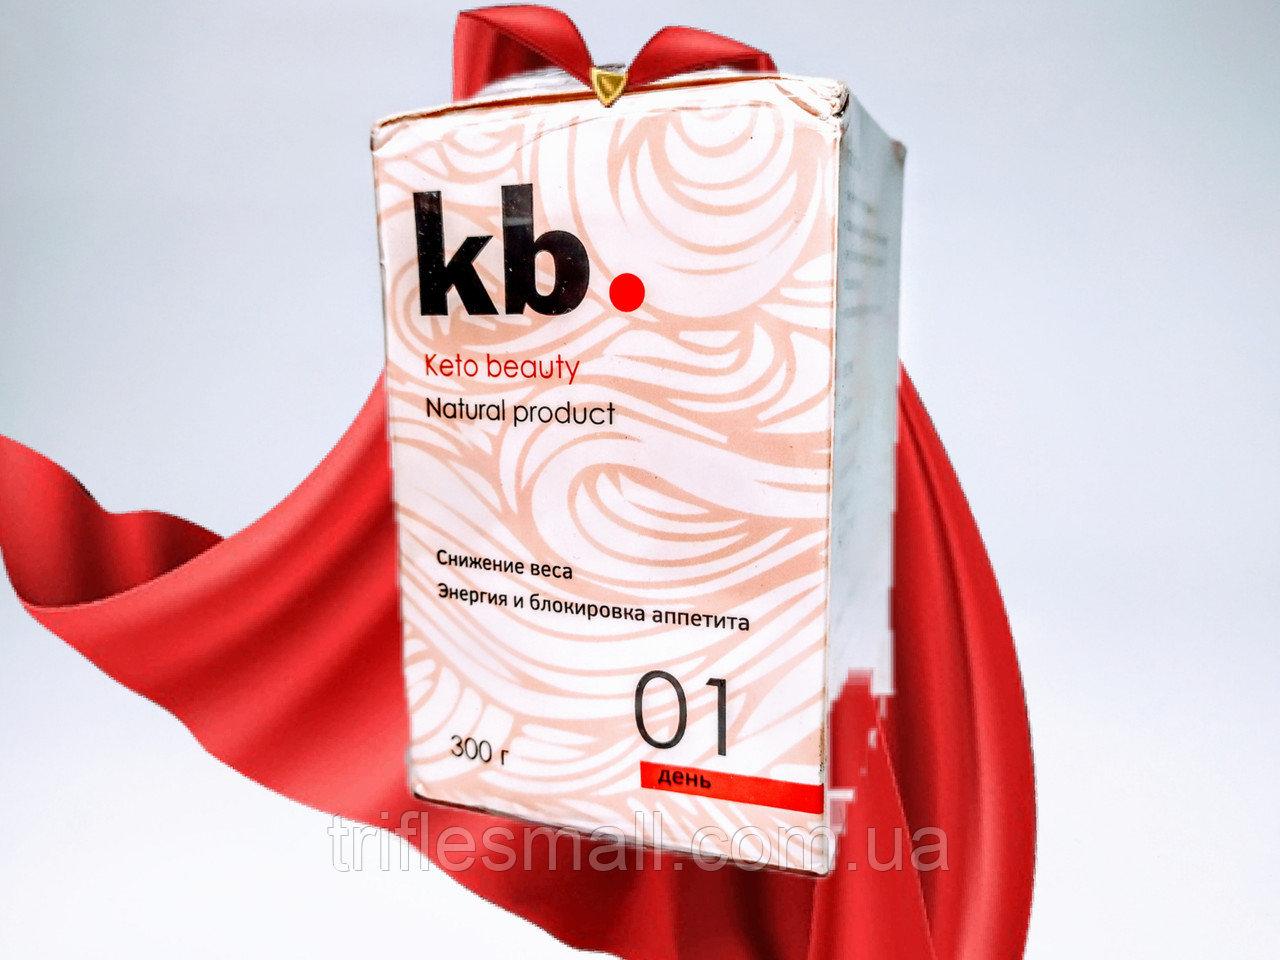 Kb. - Keto Beauty засіб для схуднення (Кето б'юті) капсули для зниження ваги №1 День